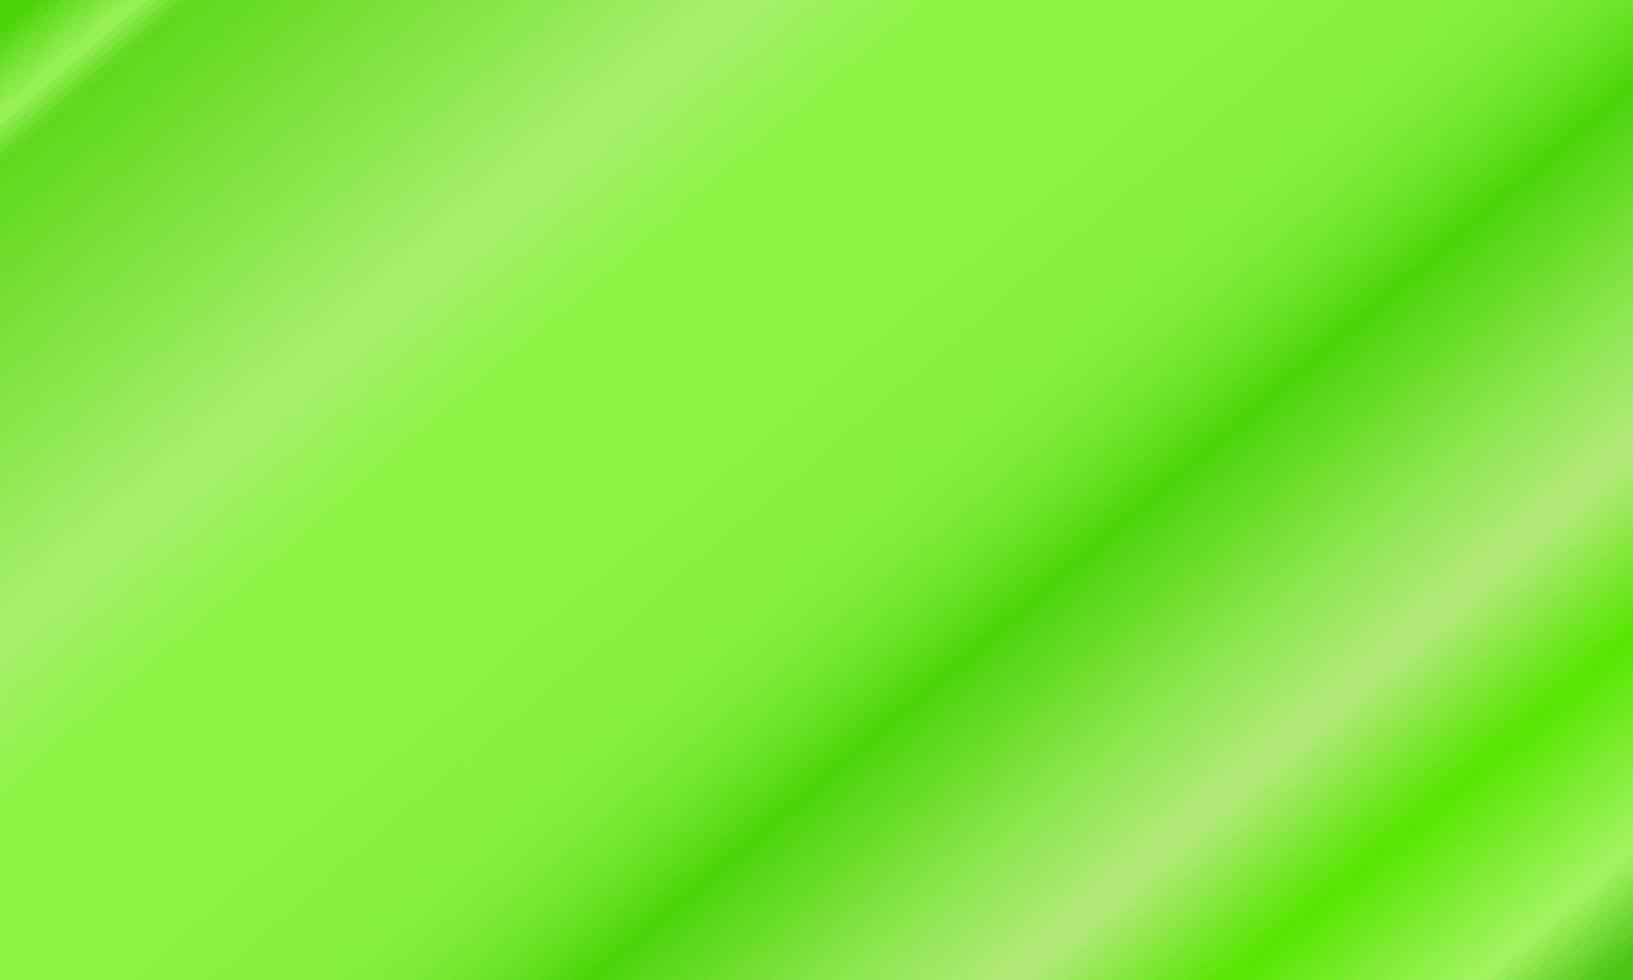 gradiente diagonal suave verde e branco. estilo abstrato, simples, moderno e colorido. ótimo para plano de fundo, papel de parede, cartão, capa, pôster, banner ou panfleto vetor